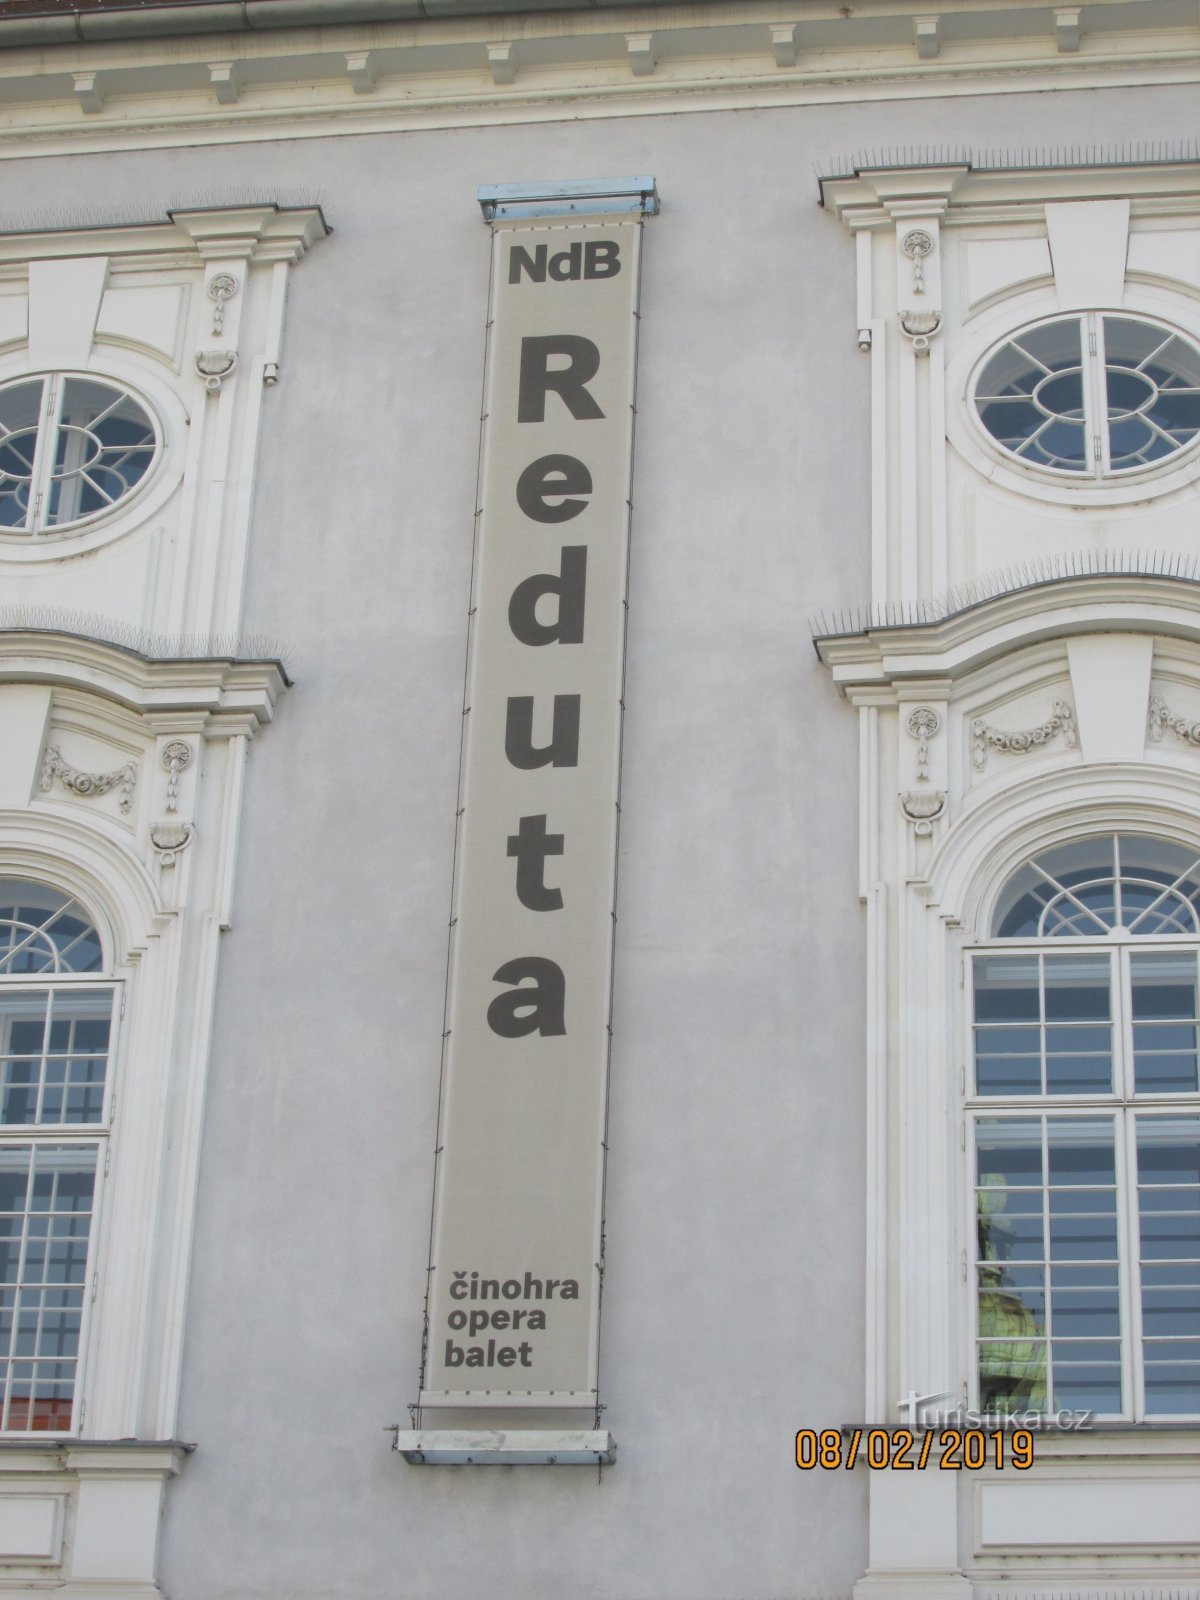 Reduta, najstarszy budynek teatralny w Europie Środkowej